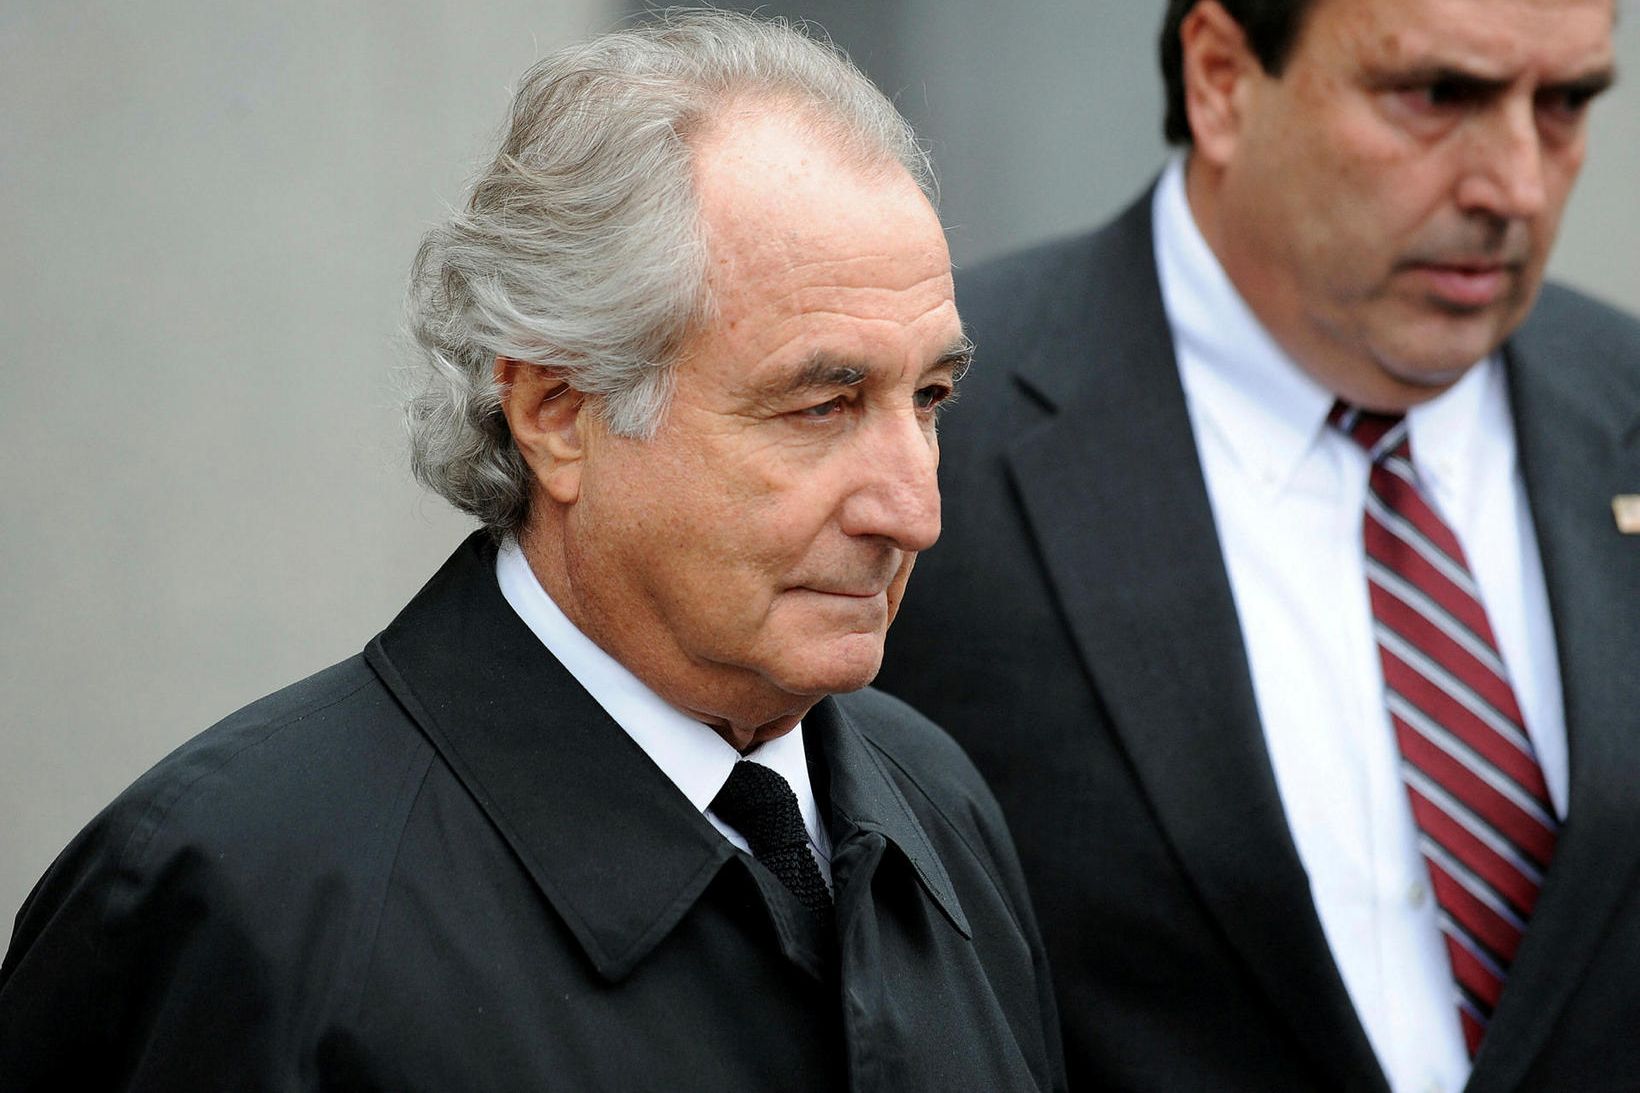 Bernard Madoff er látinn 82 ára að aldri.